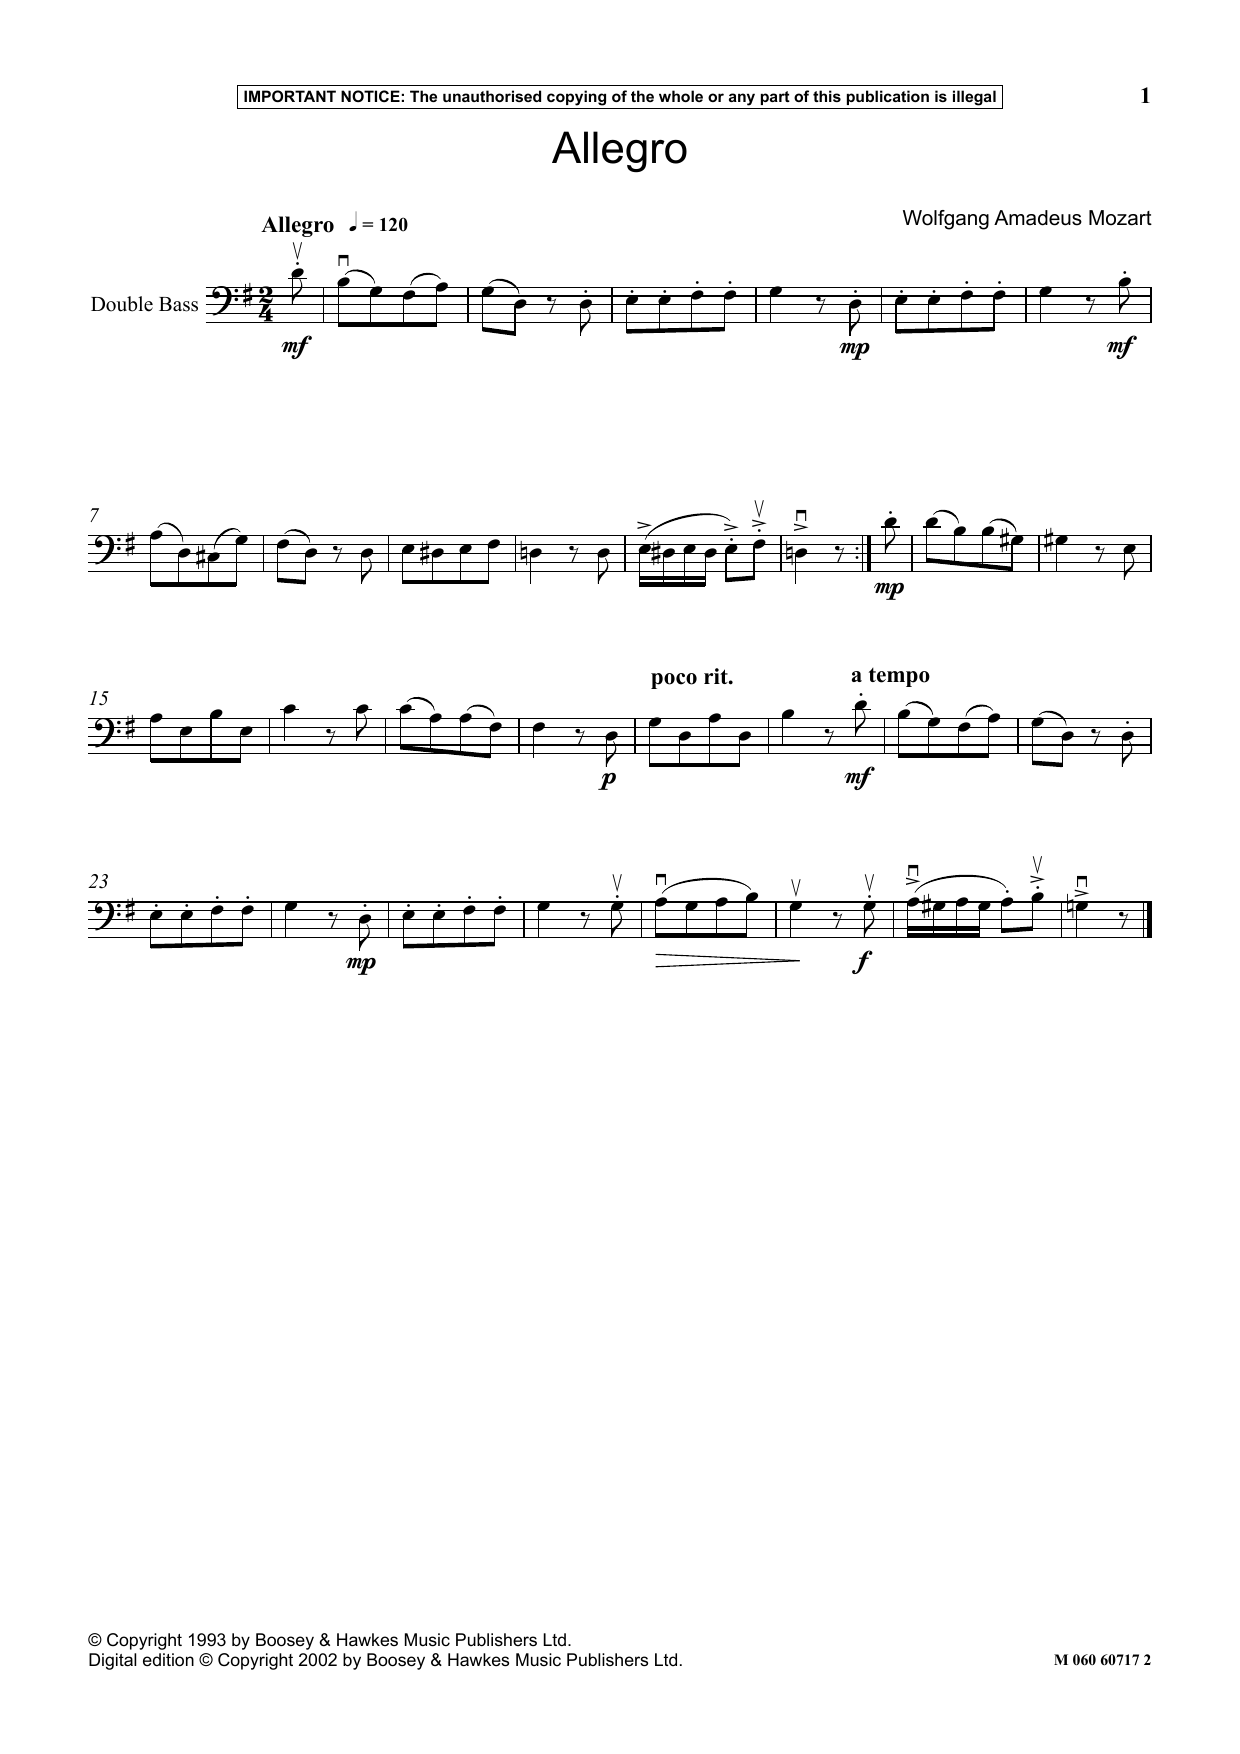 Download Wolfgang Amadeus Mozart Allegro Sheet Music